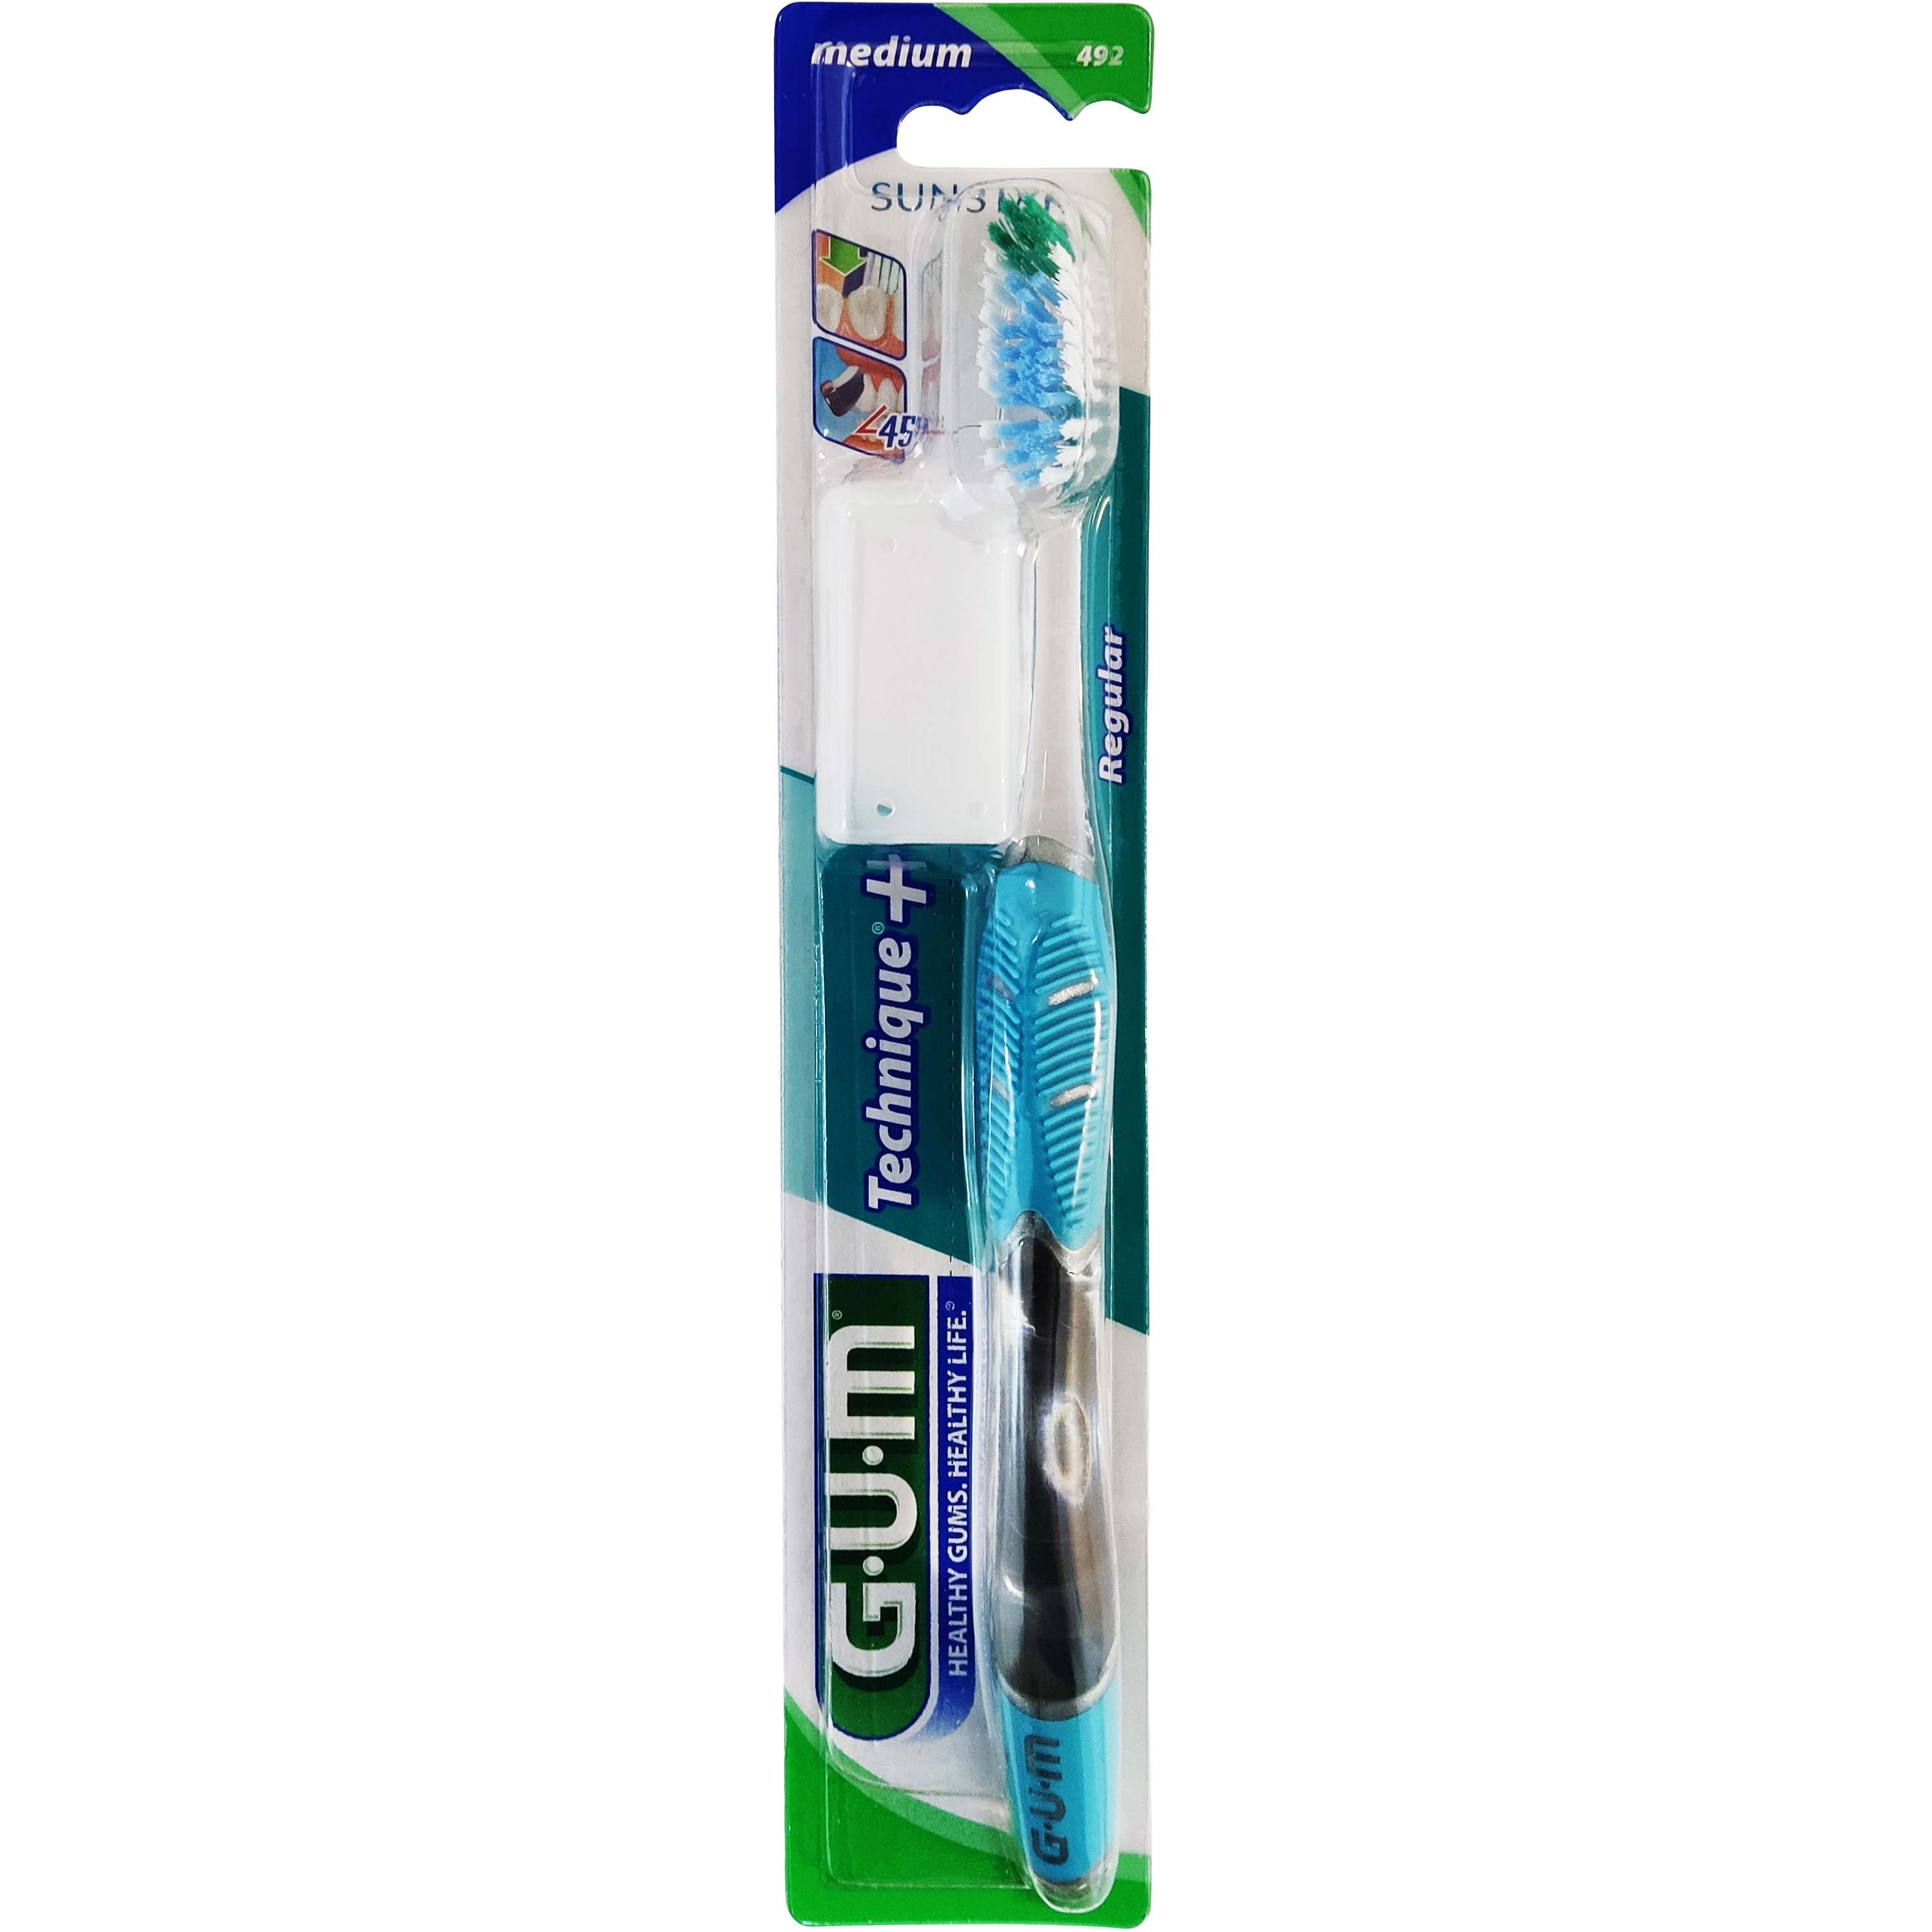 Gum Technique+ Regular Medium Toothbrush (492) Οδοντόβουρτσα Μεσαίας Σκληρότητας 1 Τεμάχιο – γαλάζιο